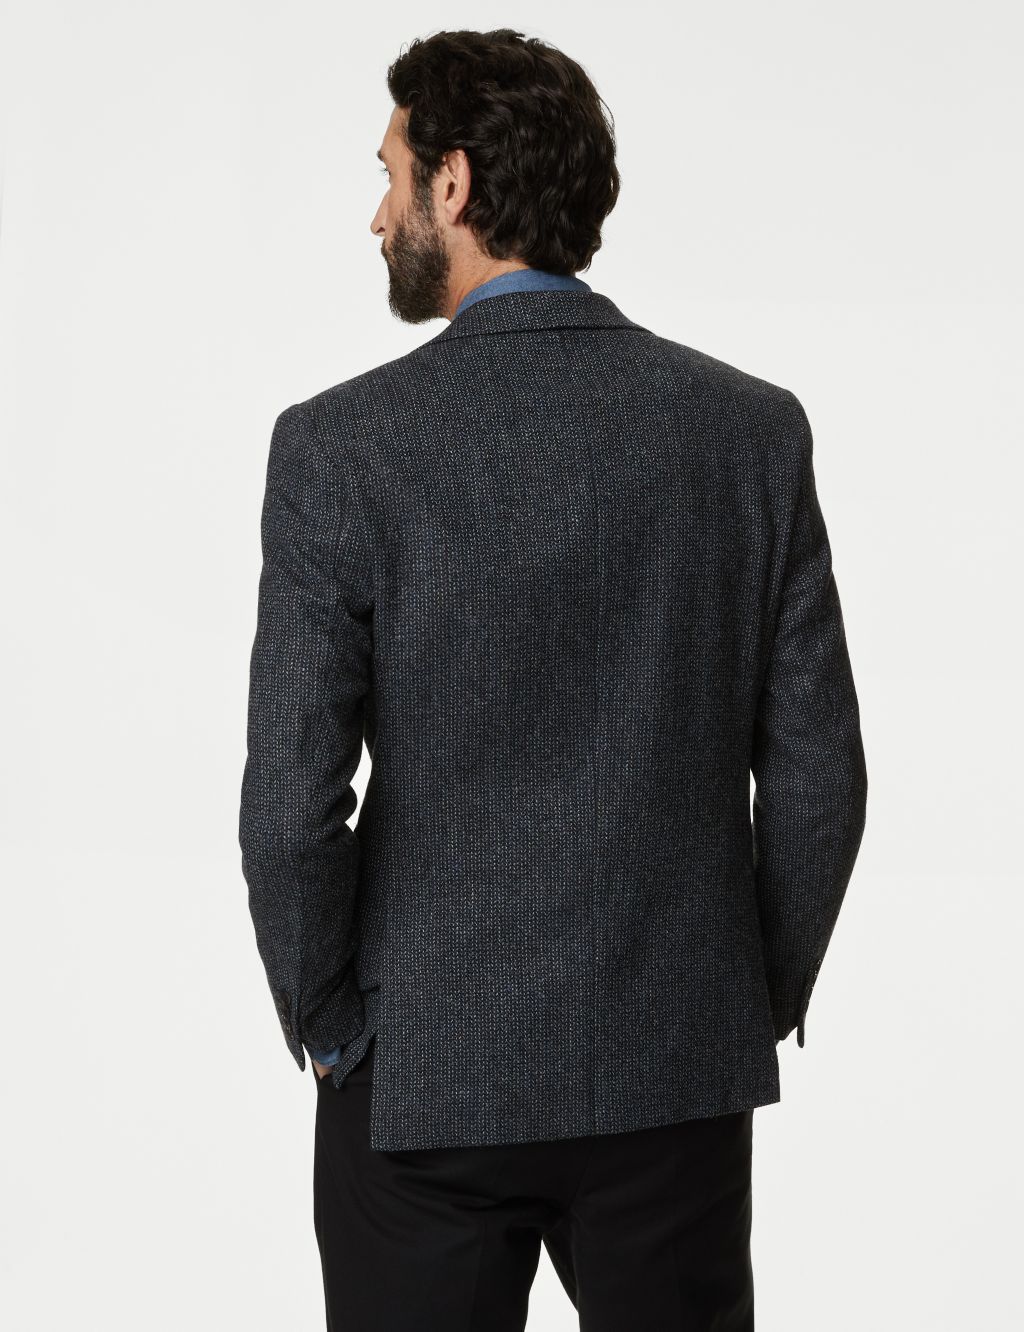 Wool Rich Textured Blazer image 6